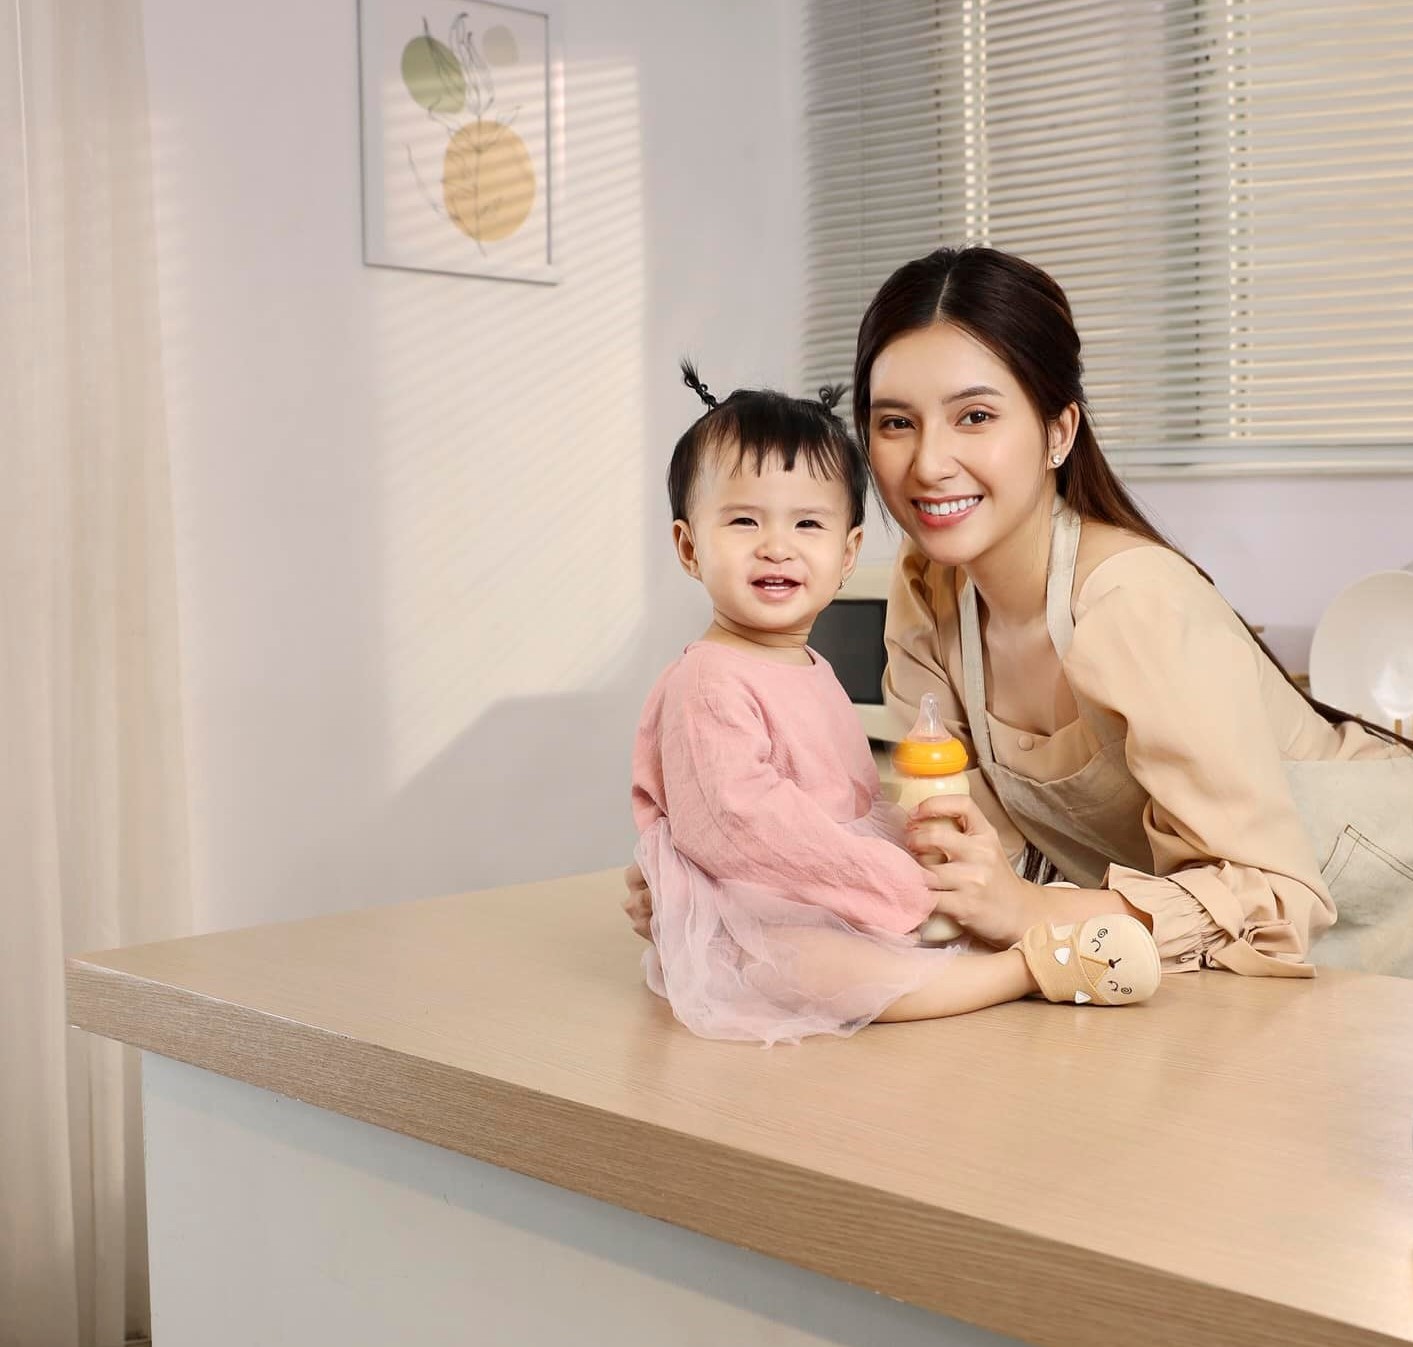 Con gái 1 tuổi của Jack lần đầu đóng quảng cáo cực chuyên nghiệp, Thiên An tiết lộ có thiên hướng làm nghệ thuật